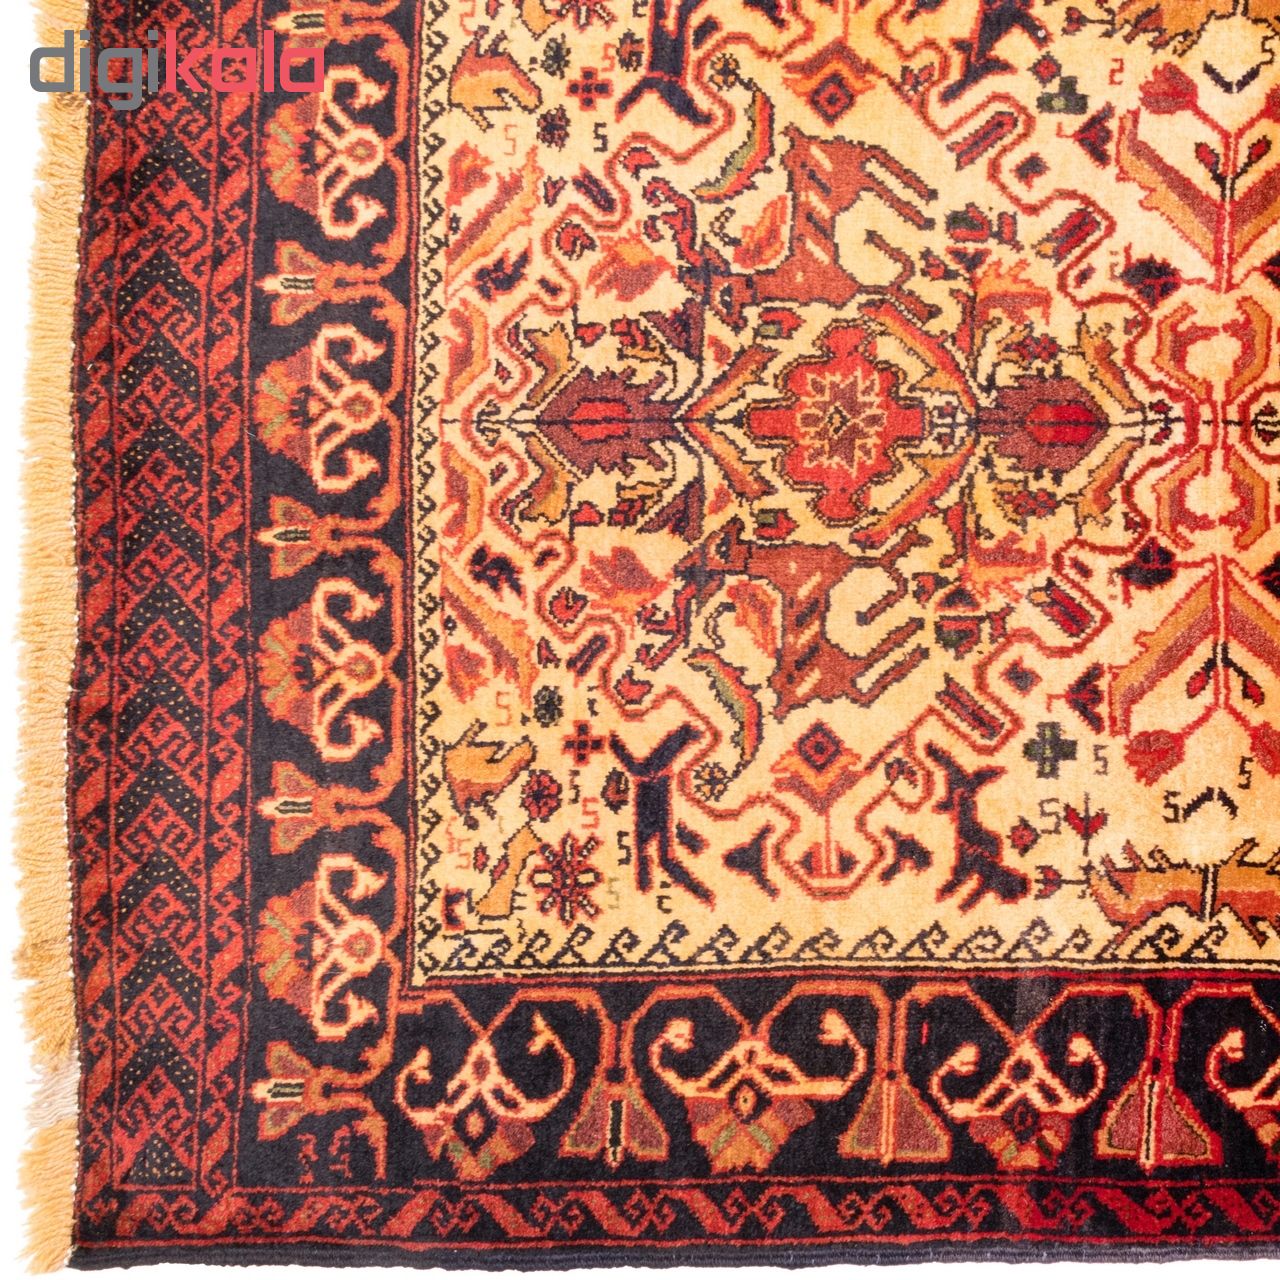 فرش دستباف قدیمی ذرع و نیم سی پرشیا کد 141054